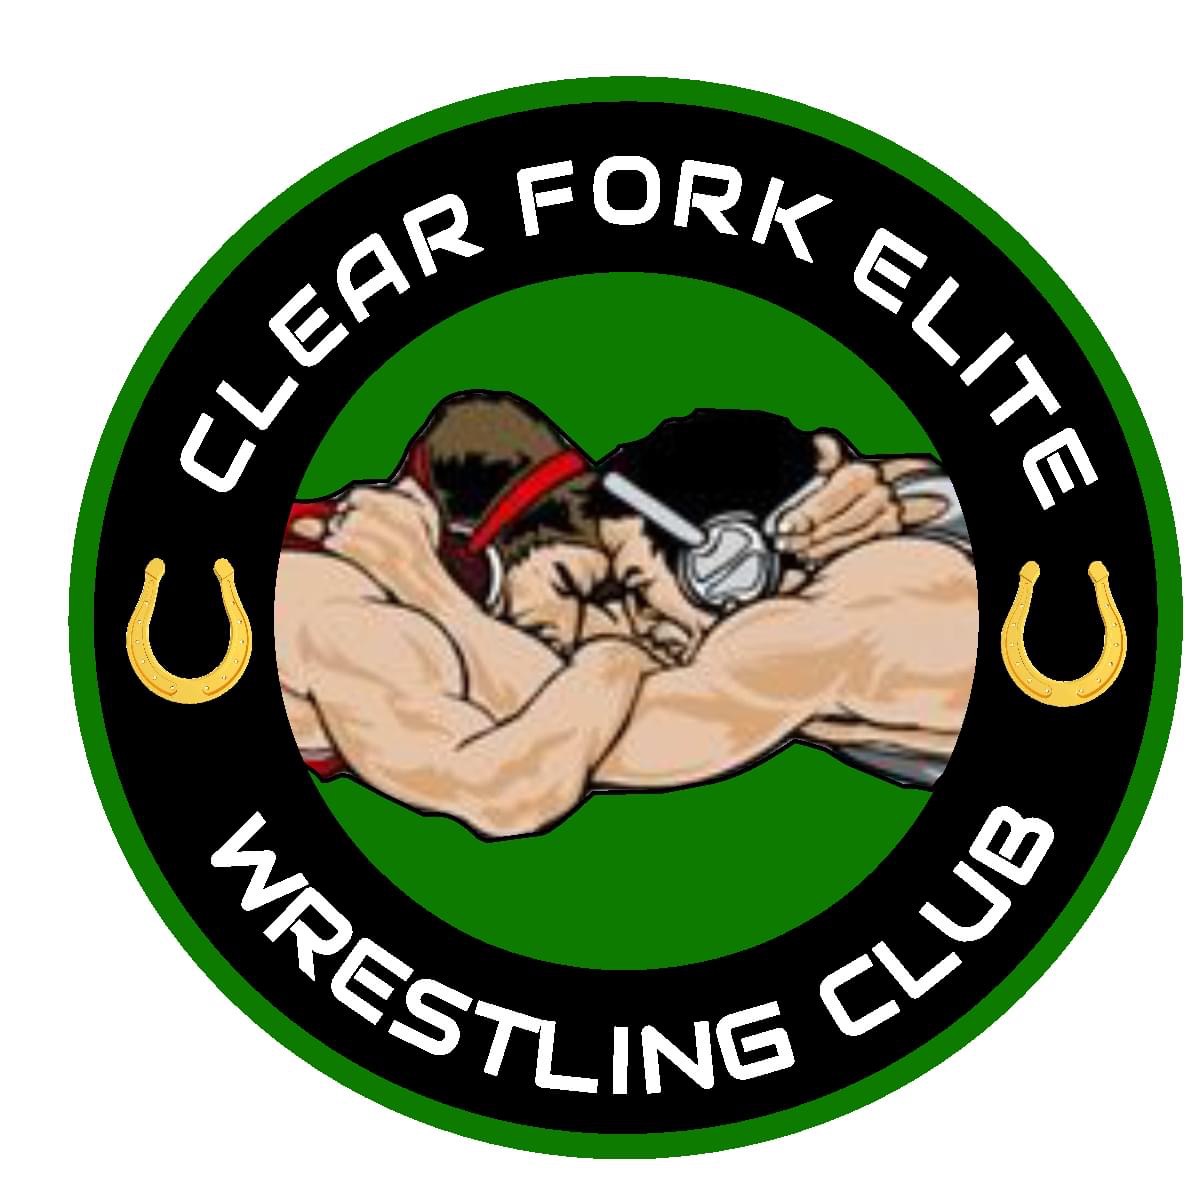 Clear Fork Wrestling